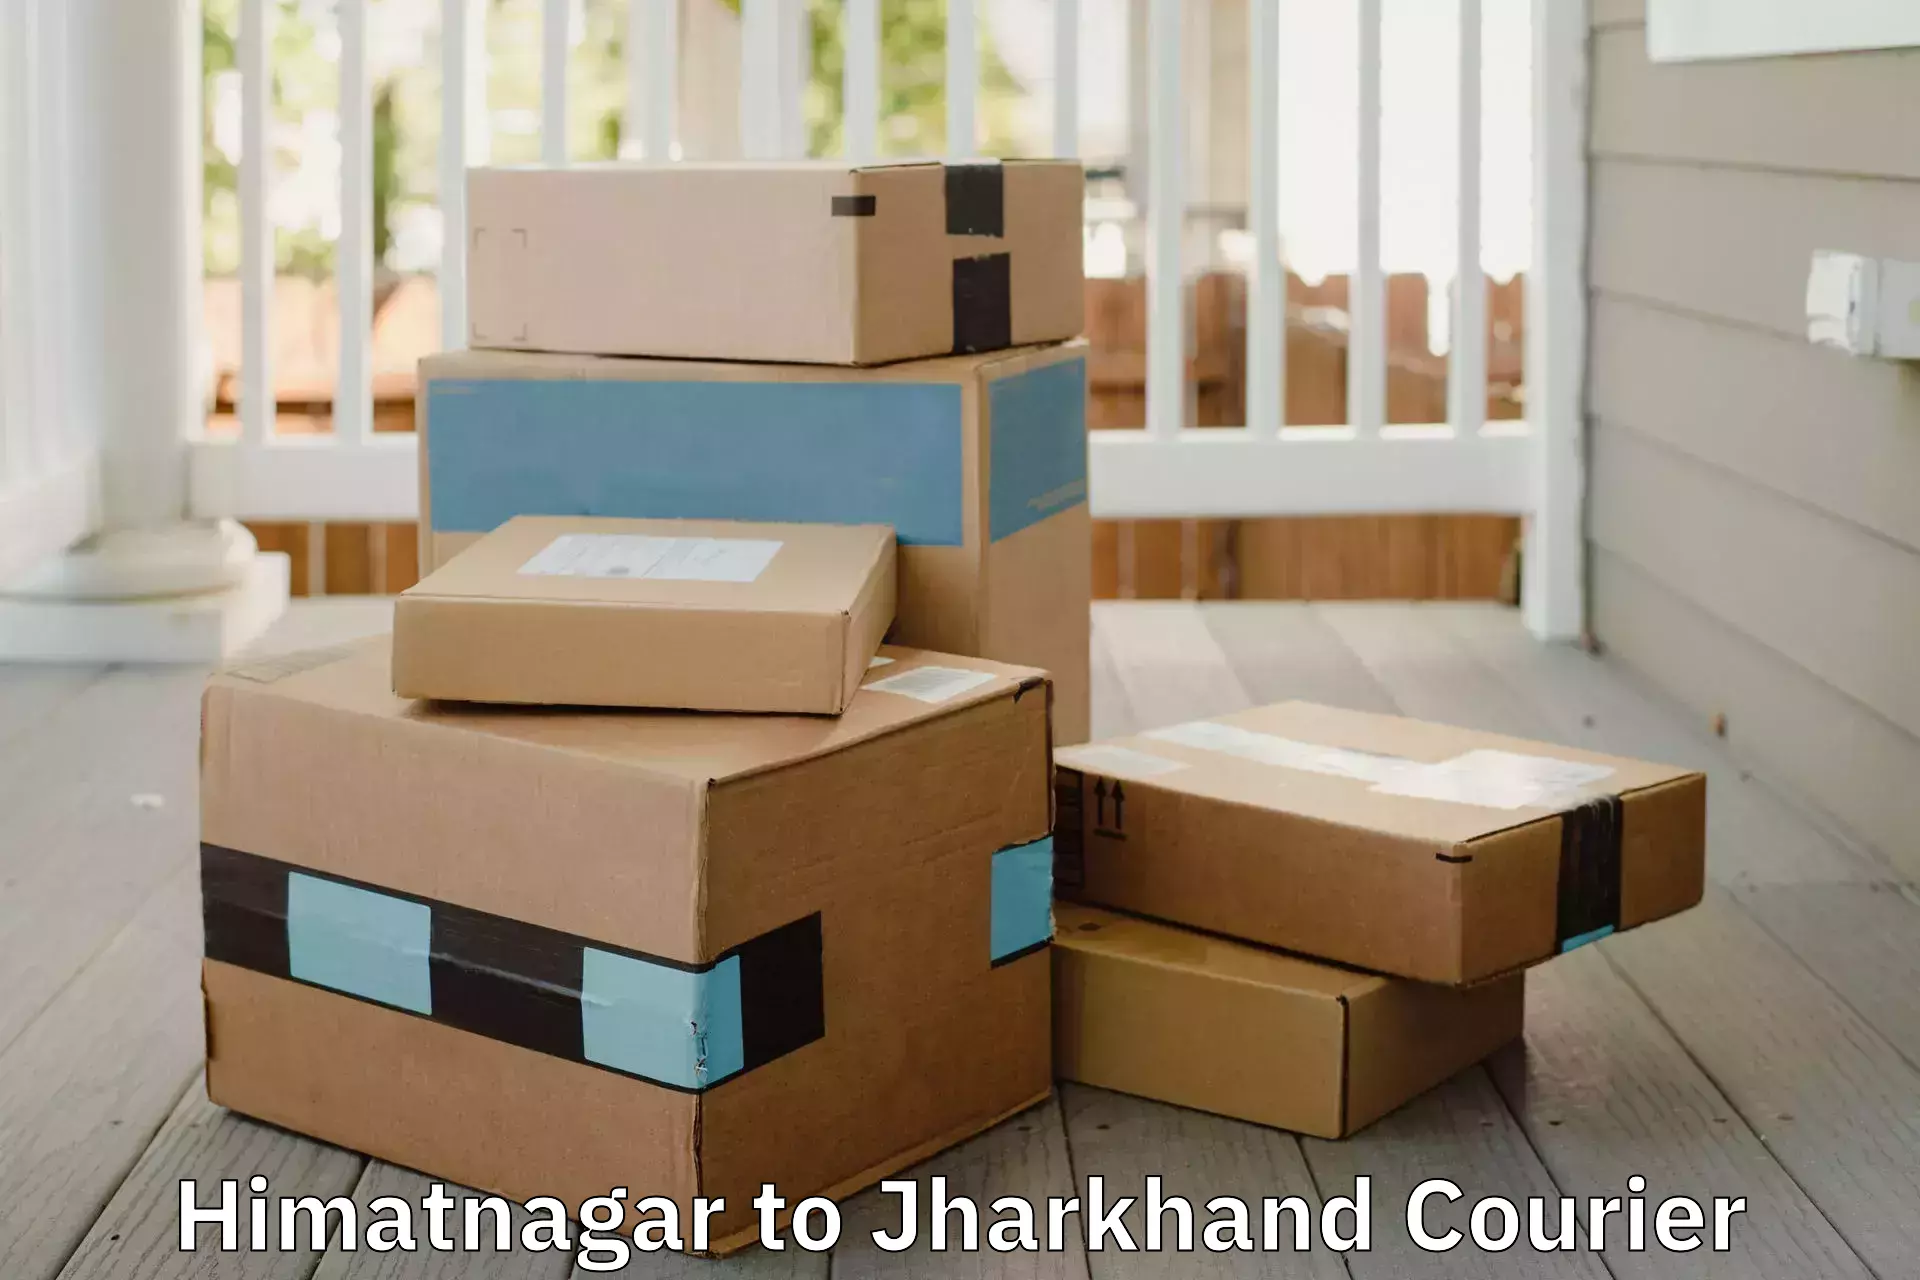 Home moving experts Himatnagar to Jharia